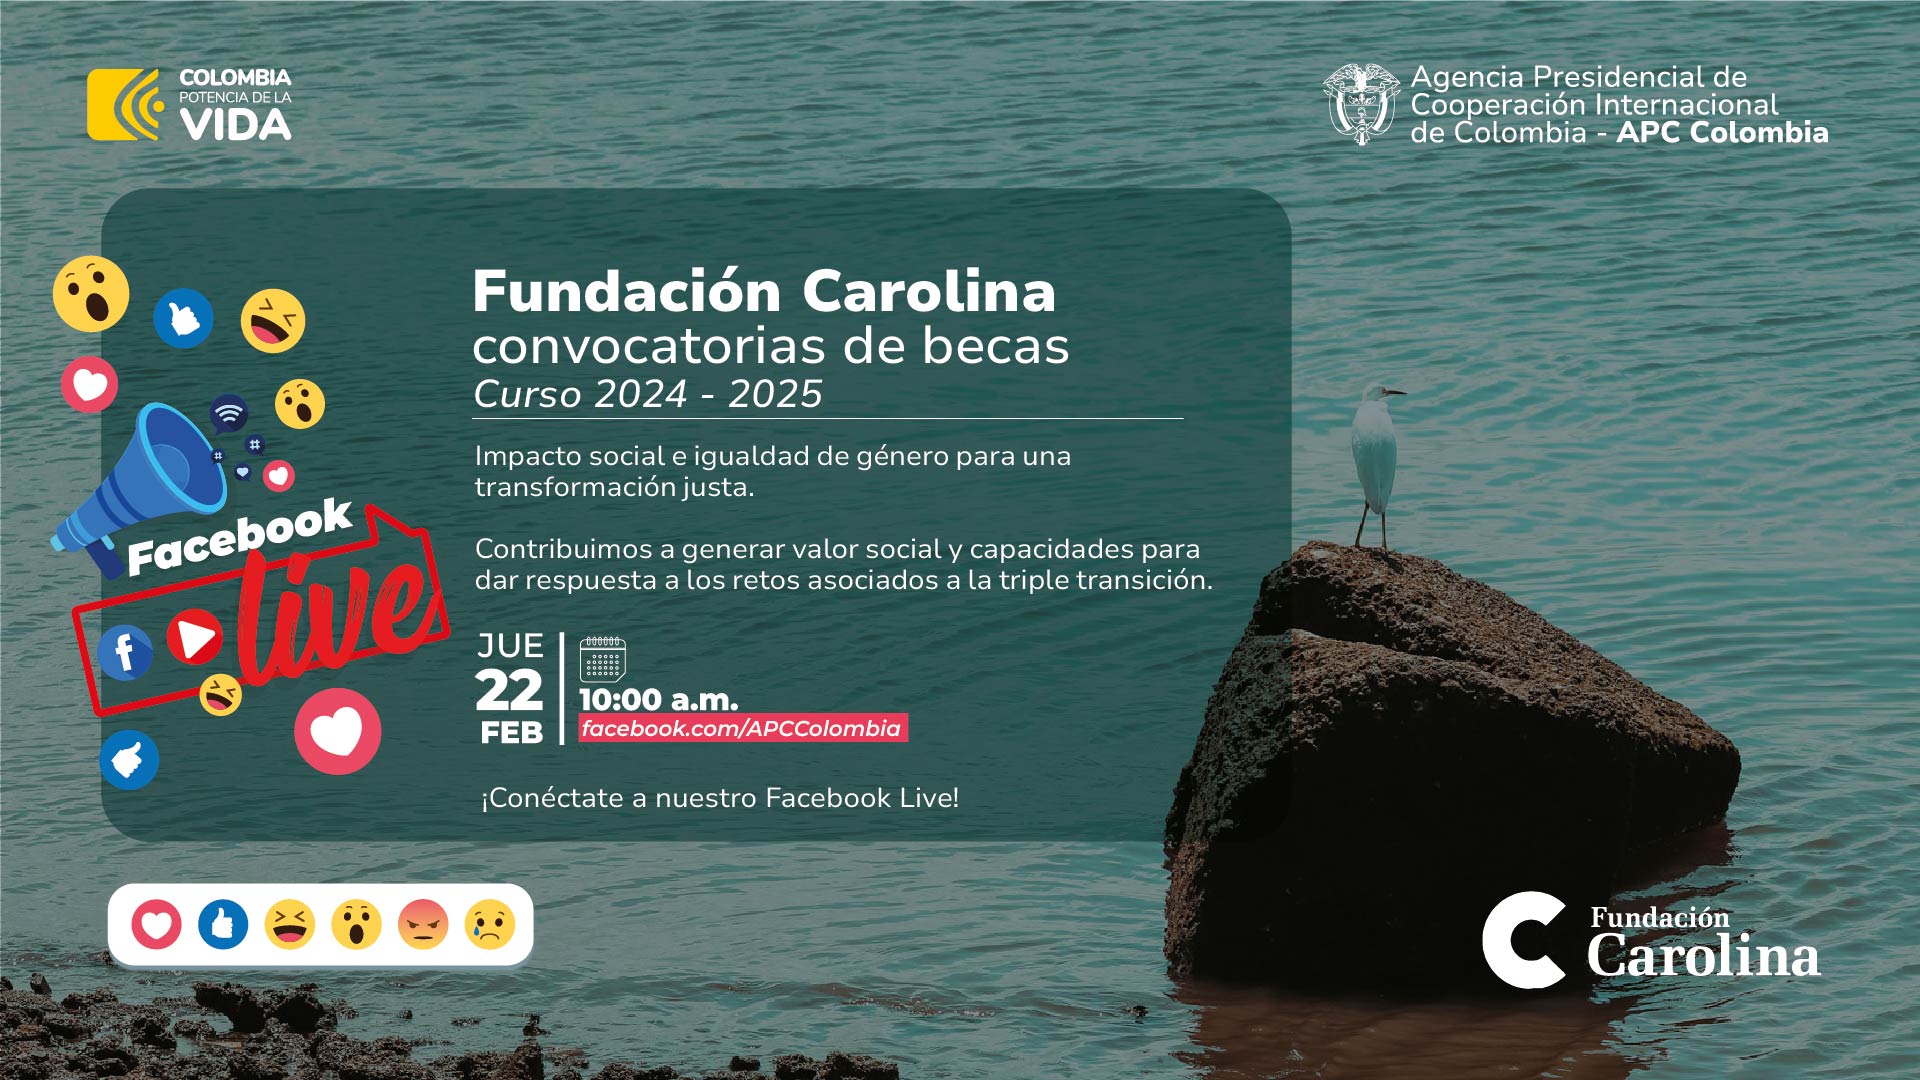 Facebook Live Becas Fundación Carolina jueves 22 de febrero de 2024 a las diez de la mañana